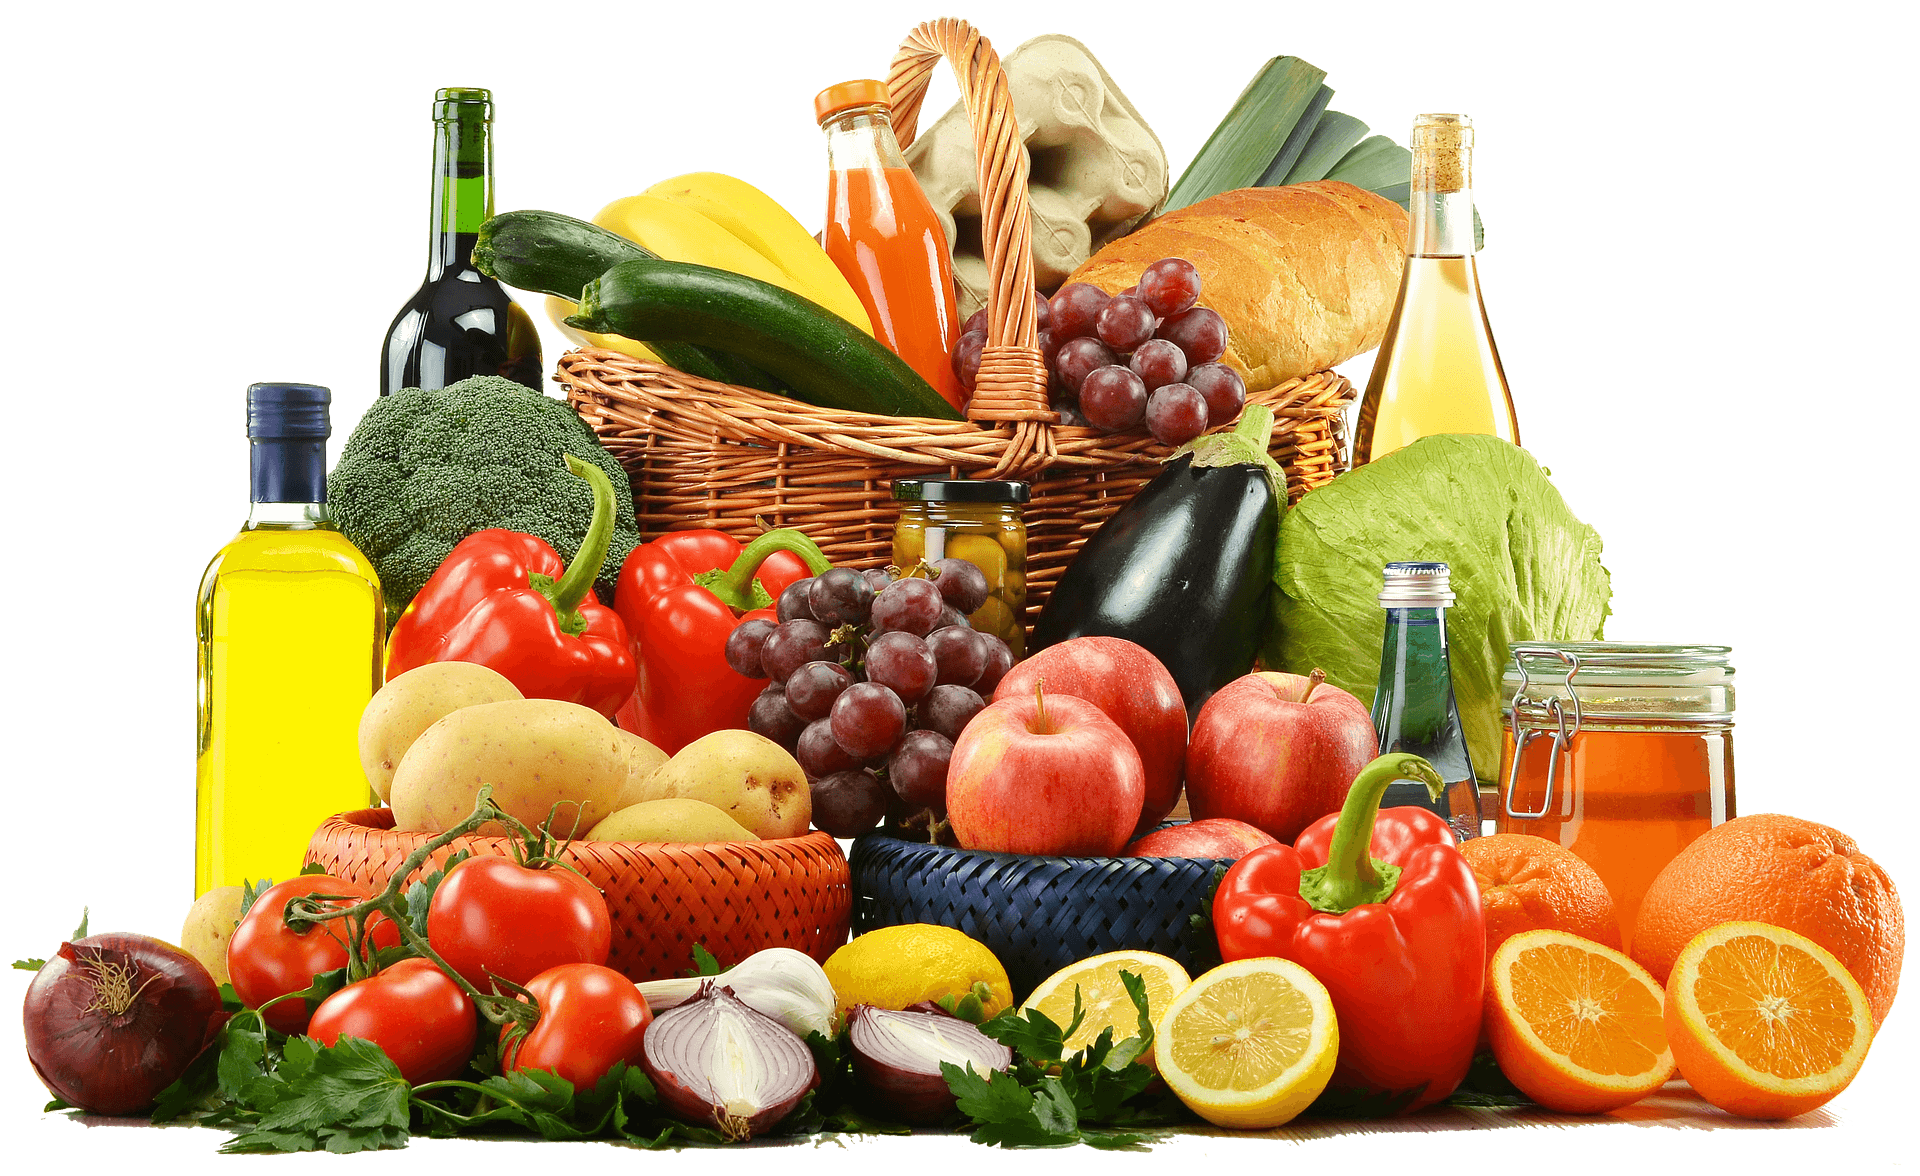 Verschiedenes Obst und Gemüse wie Bananen, Zwiebeln, Tomaten, Orangen, Kartoffeln